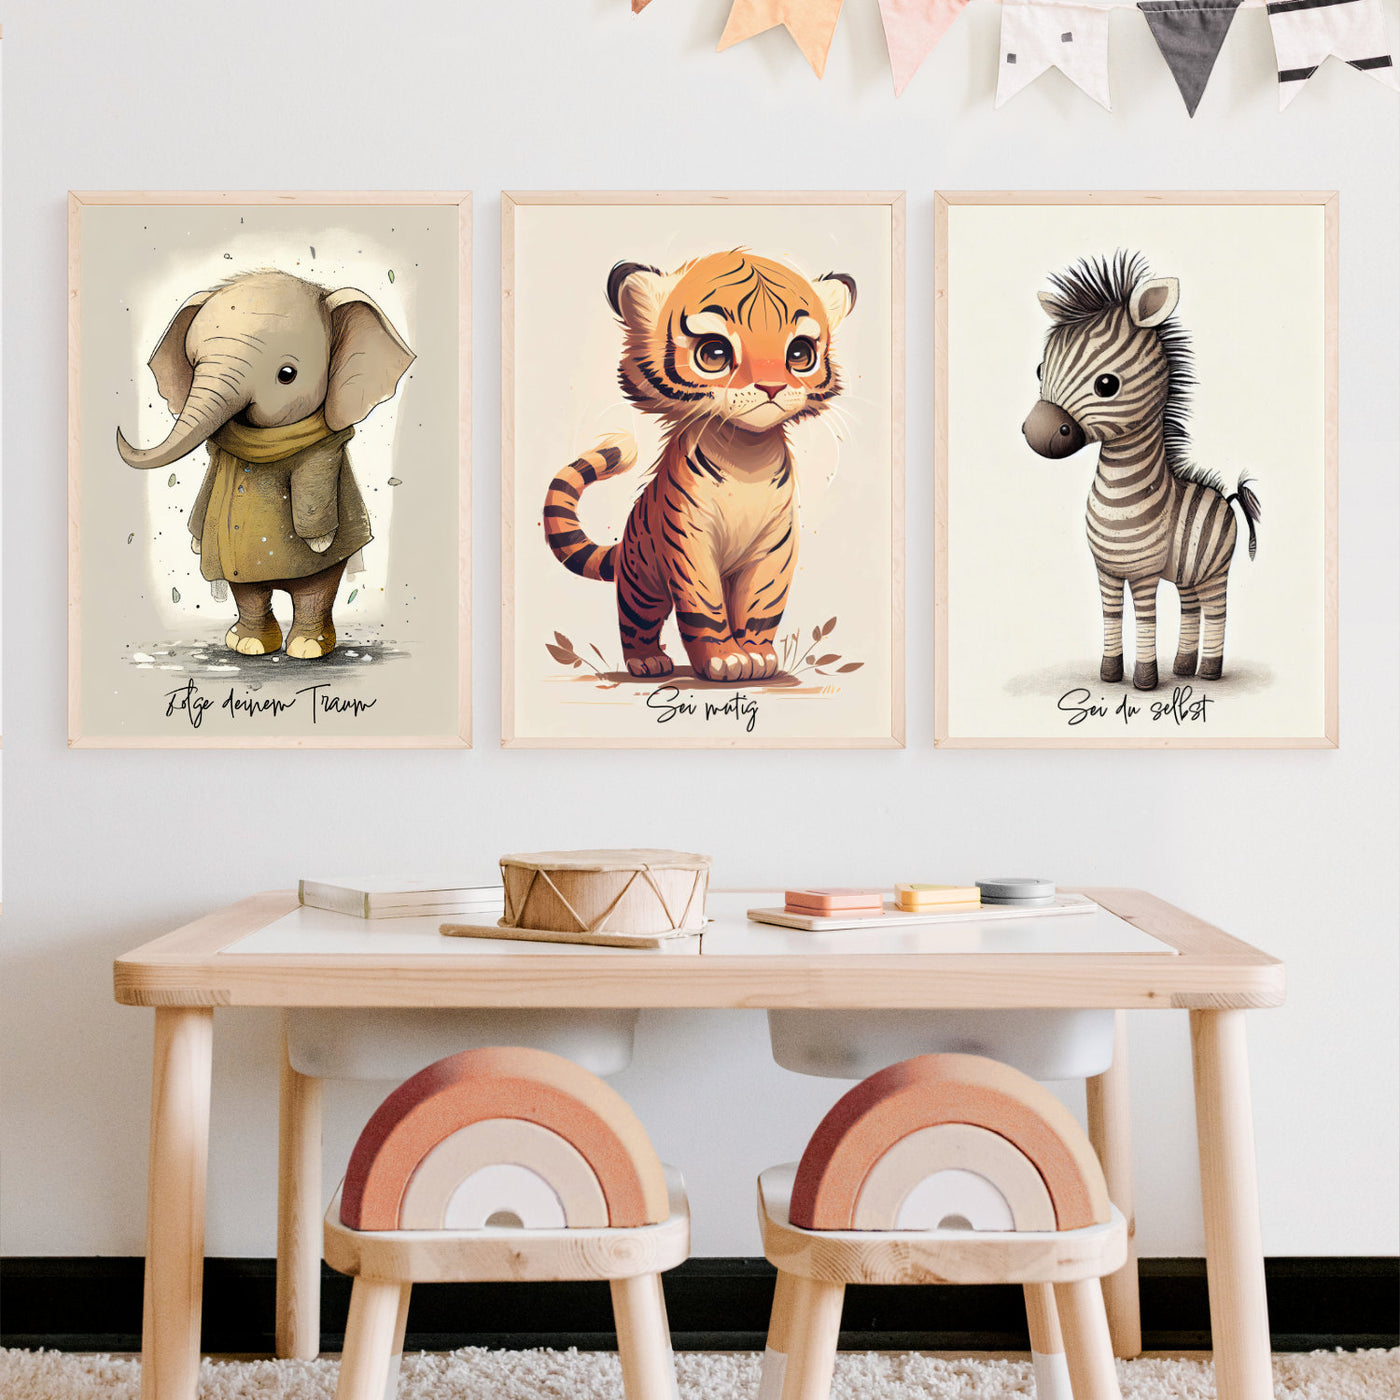 Tierposter Kinderzimmer Poster Set Wanddeko Poster Spruch Bundle Motivationsposter Geschenk Eltern Geburt Elefant, Tiger, Zebra Bilder